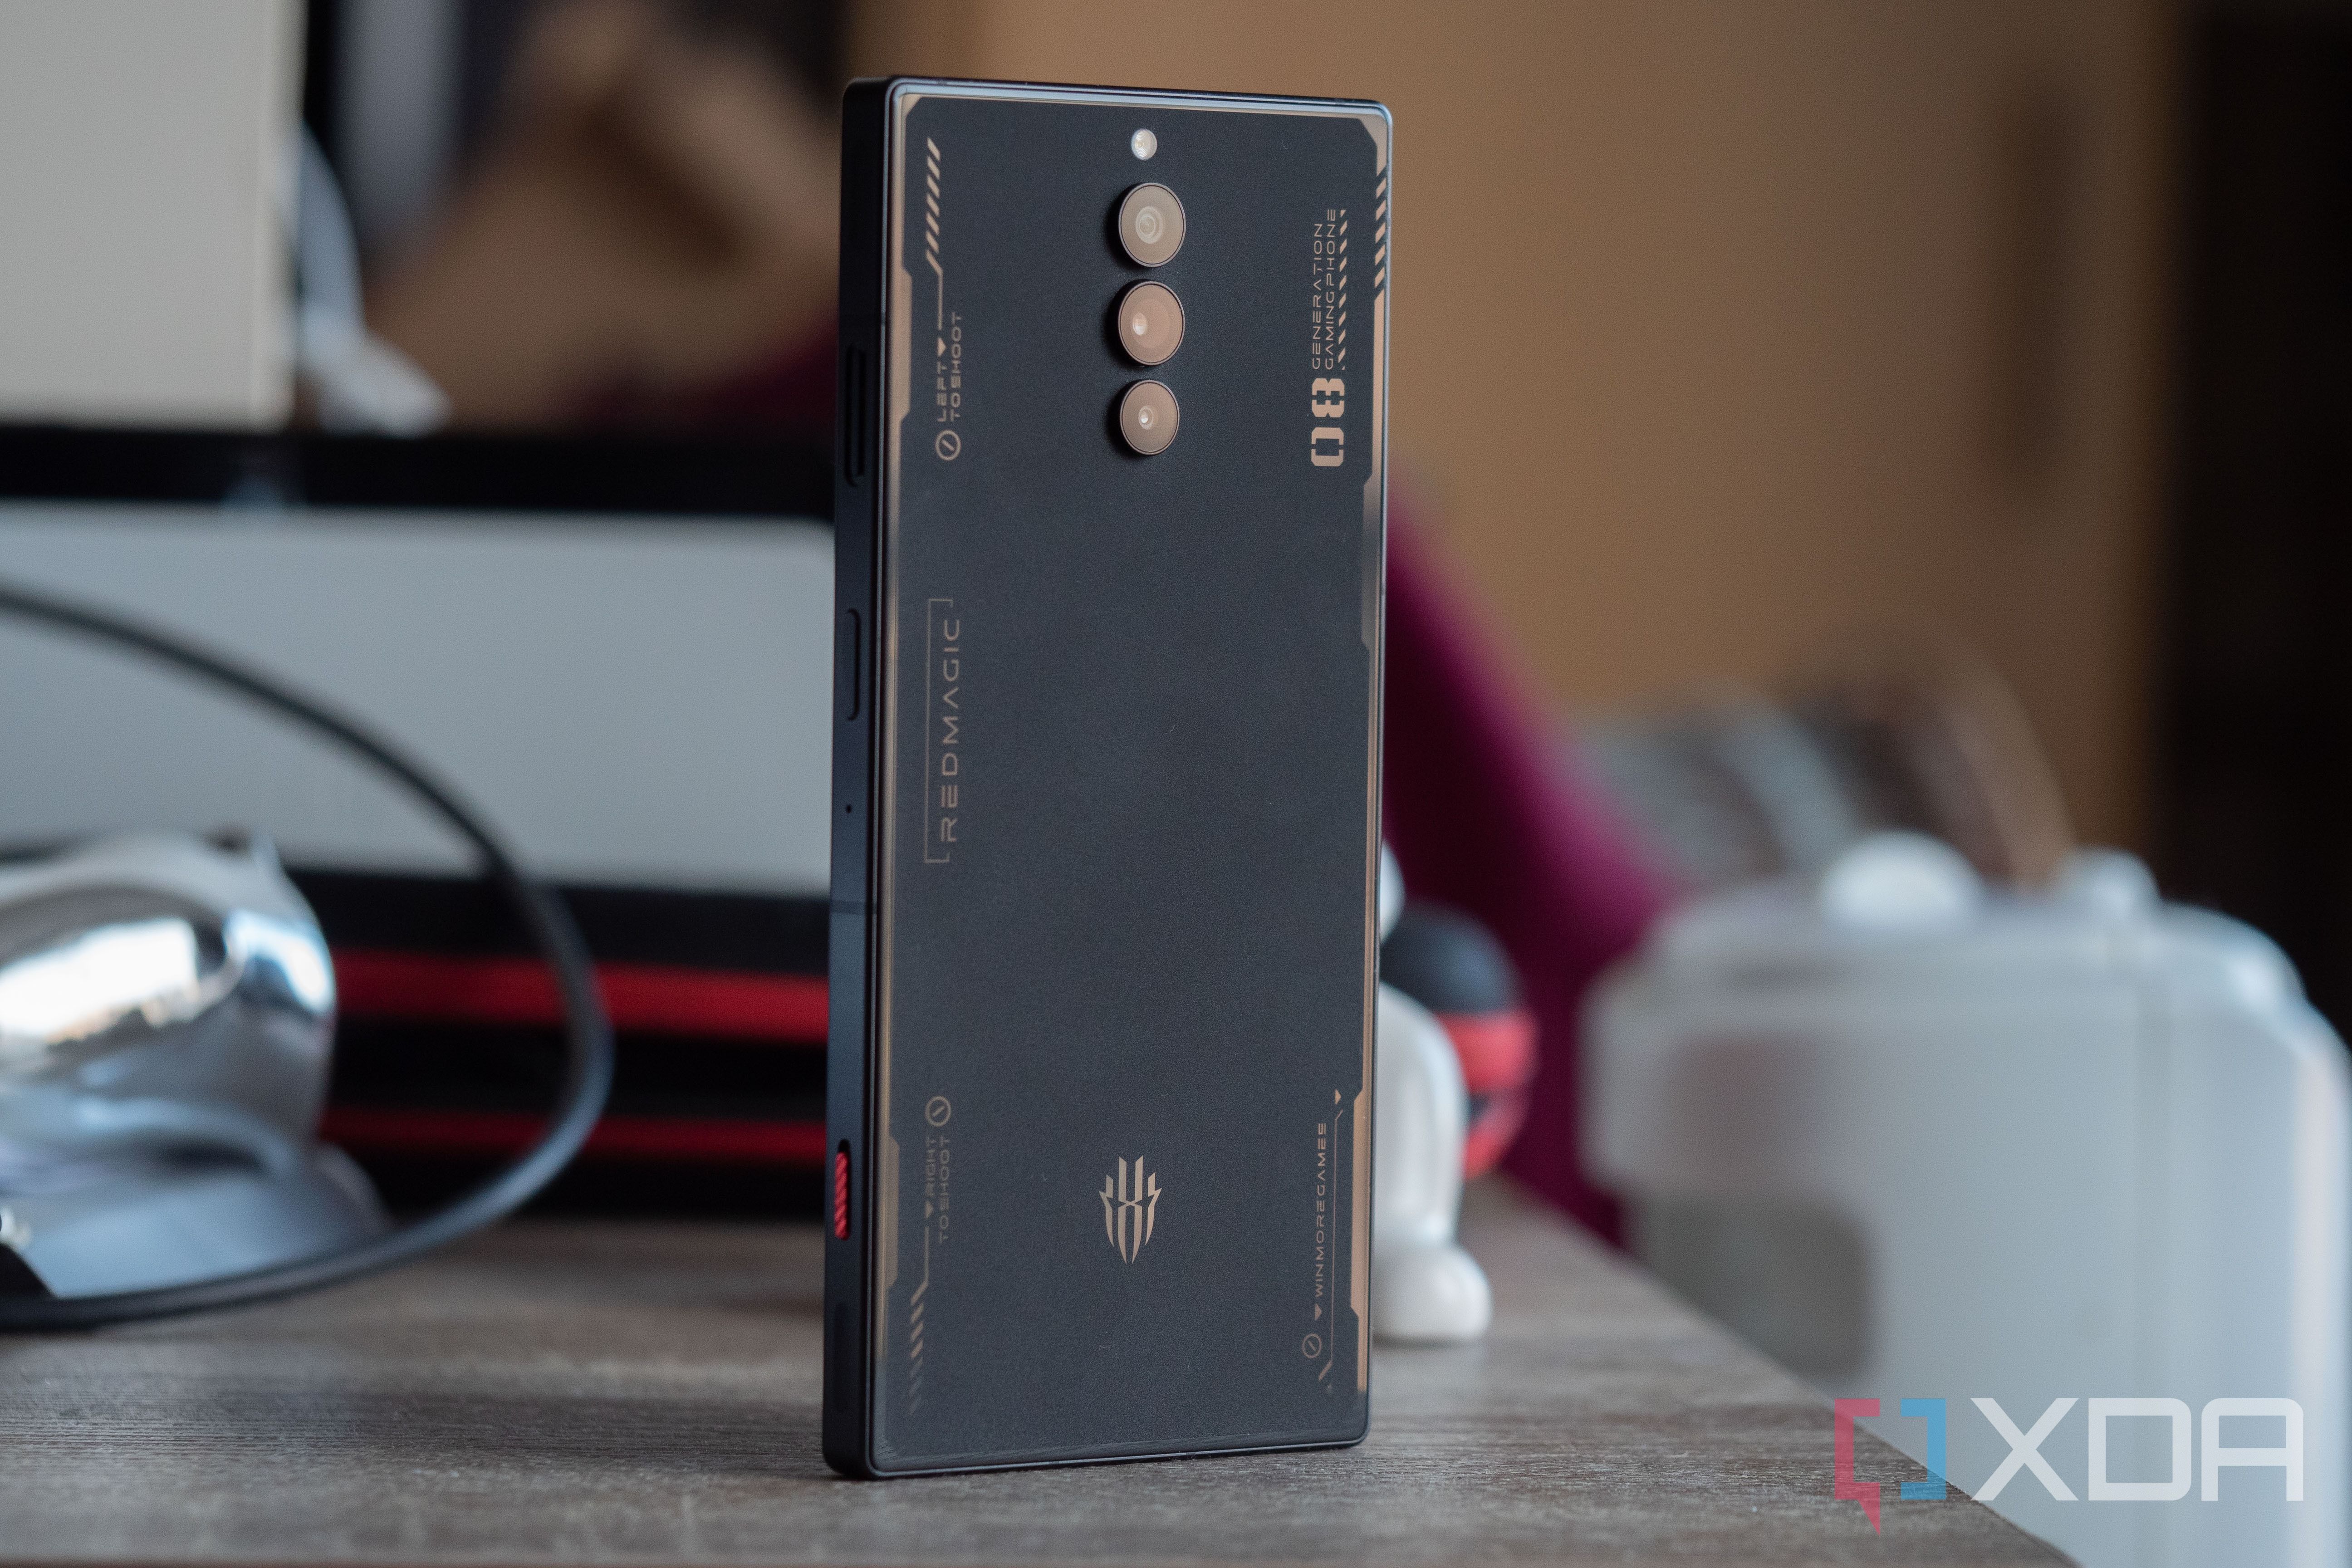 スマートフォン/携帯電話 スマートフォン本体 RedMagic 8 Pro review: The most powerful gaming phone held back by 